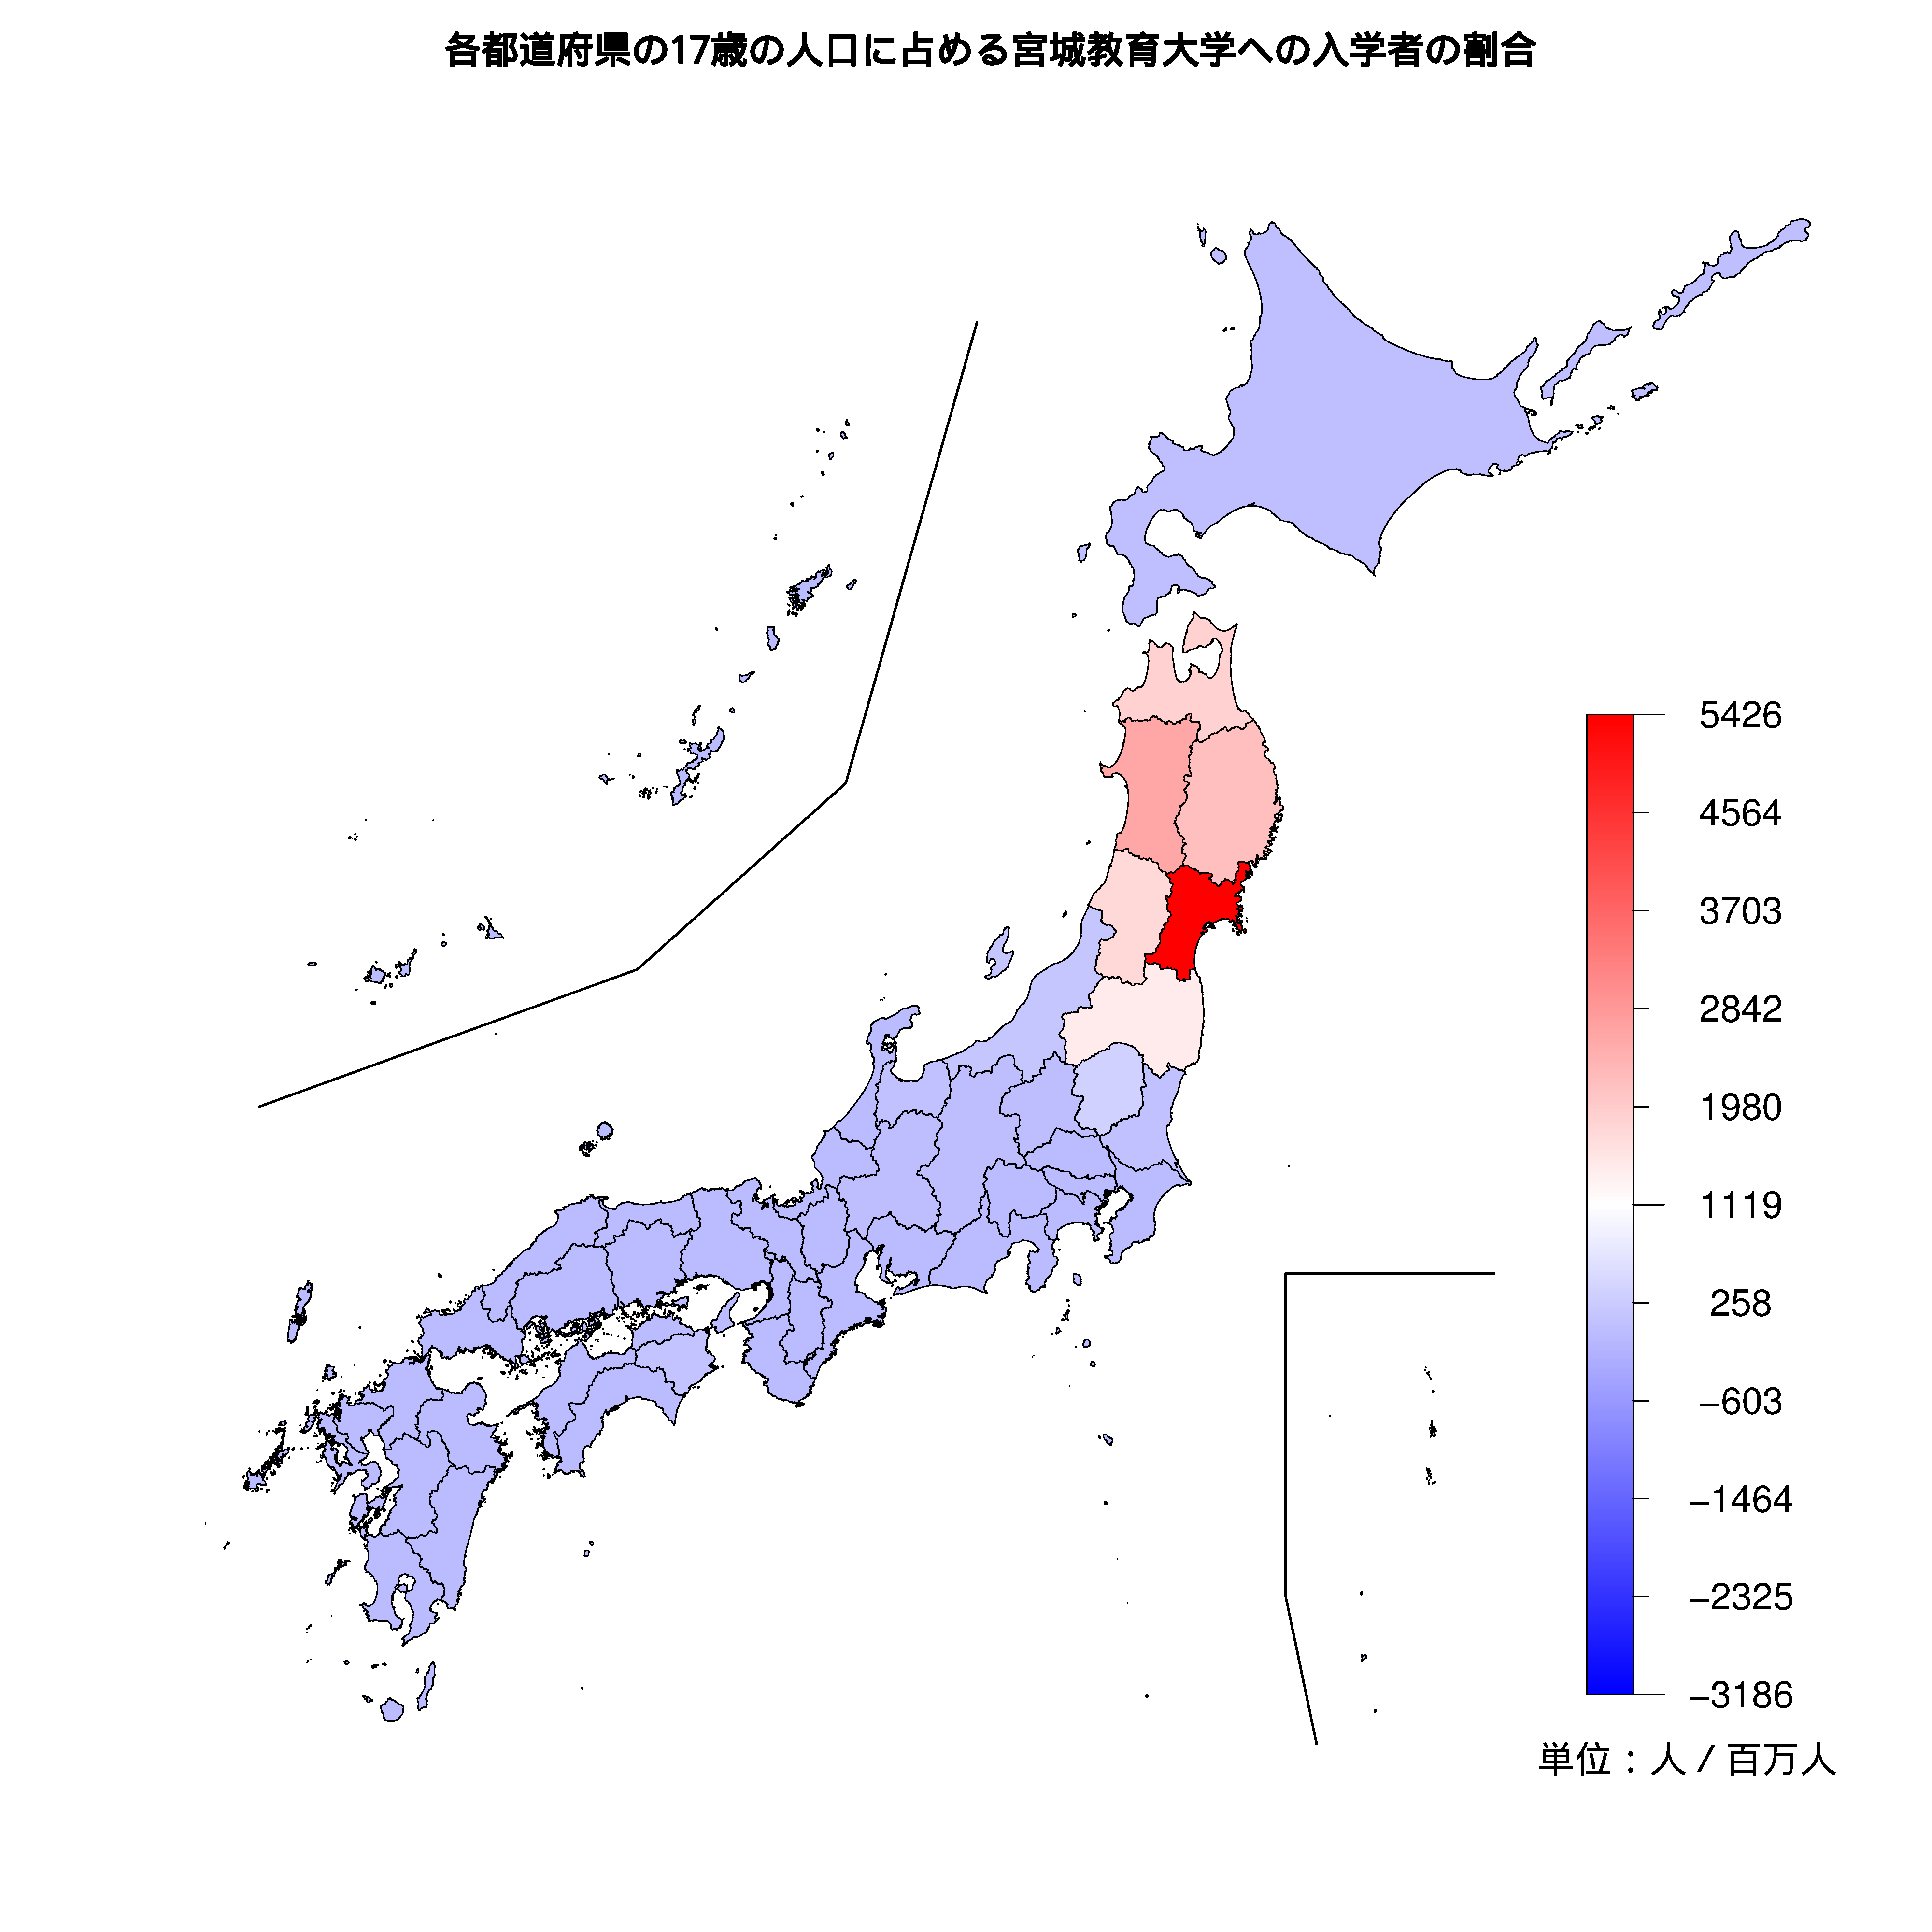 宮城教育大学への入学者が多い都道府県の色分け地図